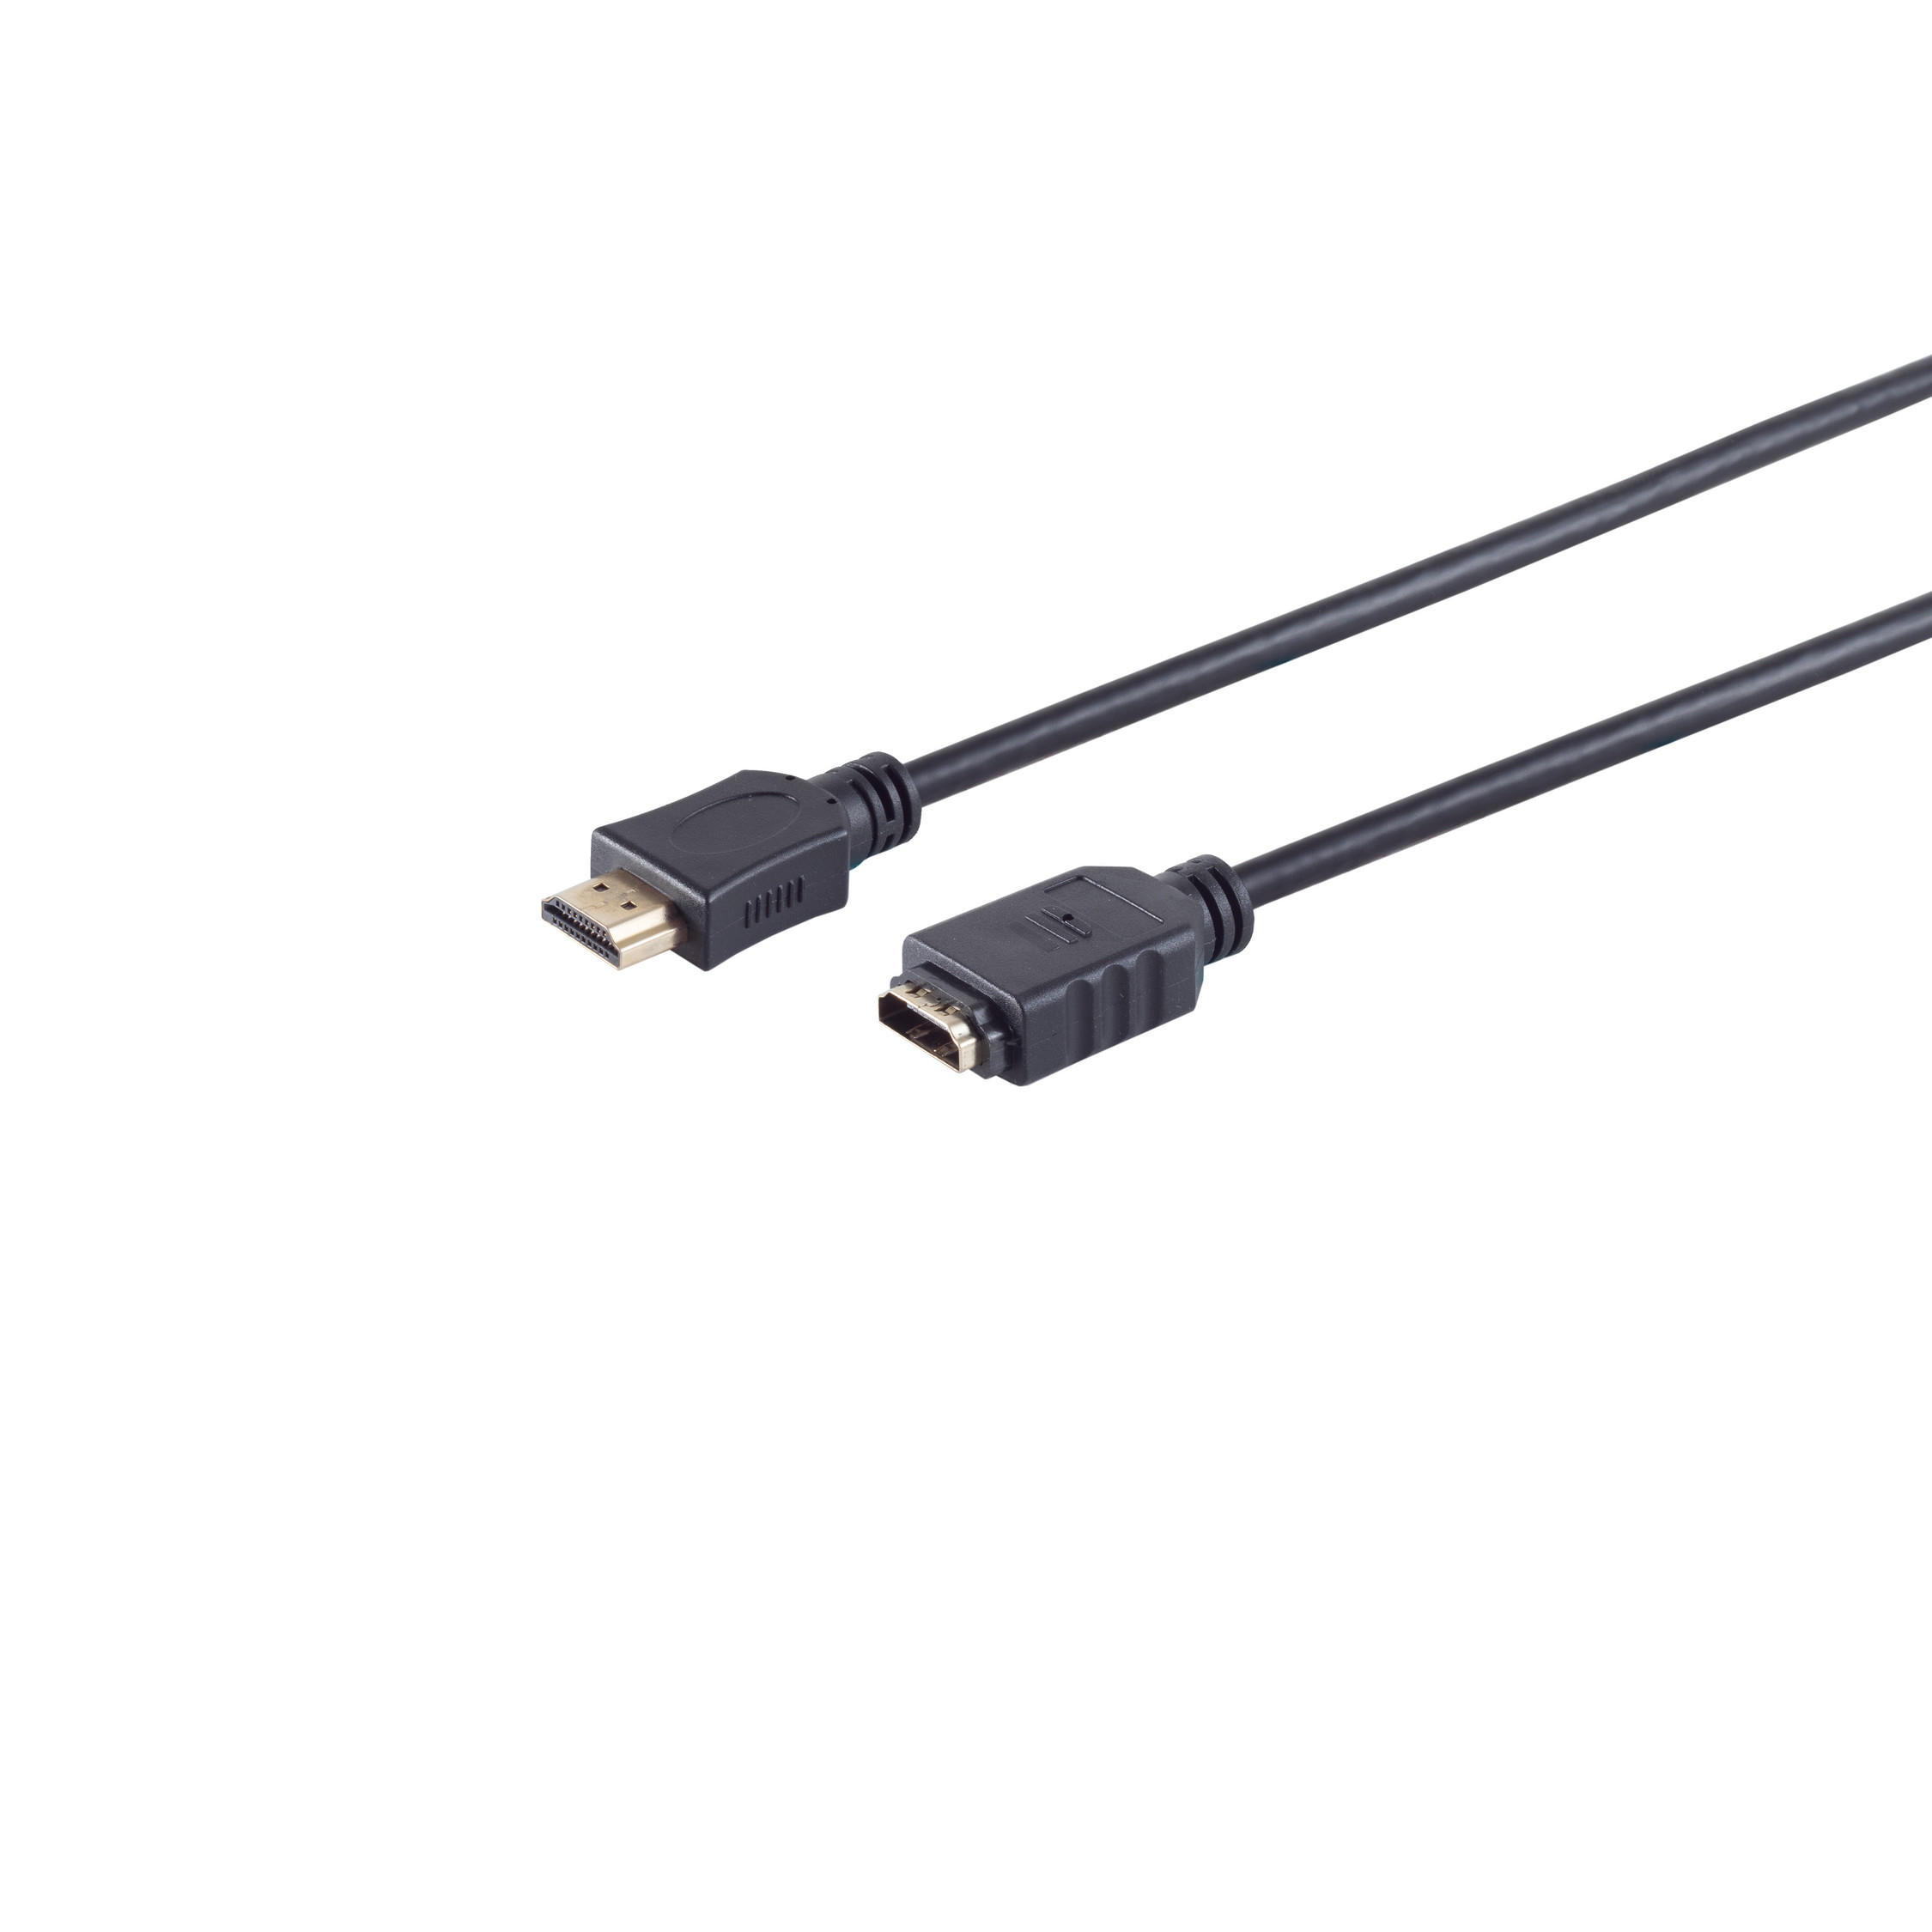 A-Buchse 0,5m verg. MAXIMUM HDMI / HEAC A-Stecker Kabel CONNECTIVITY HDMI S/CONN HDMI